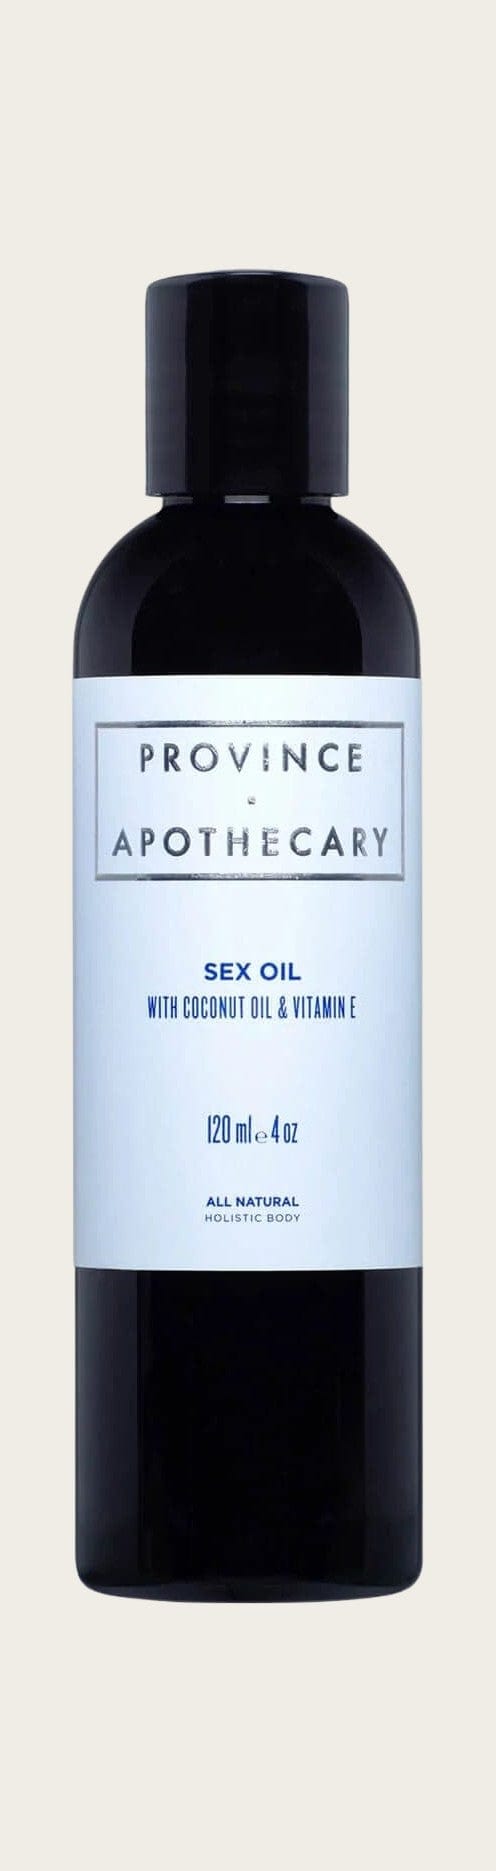 Provnice Apothecary Oil Sex Oil sunja link - canada